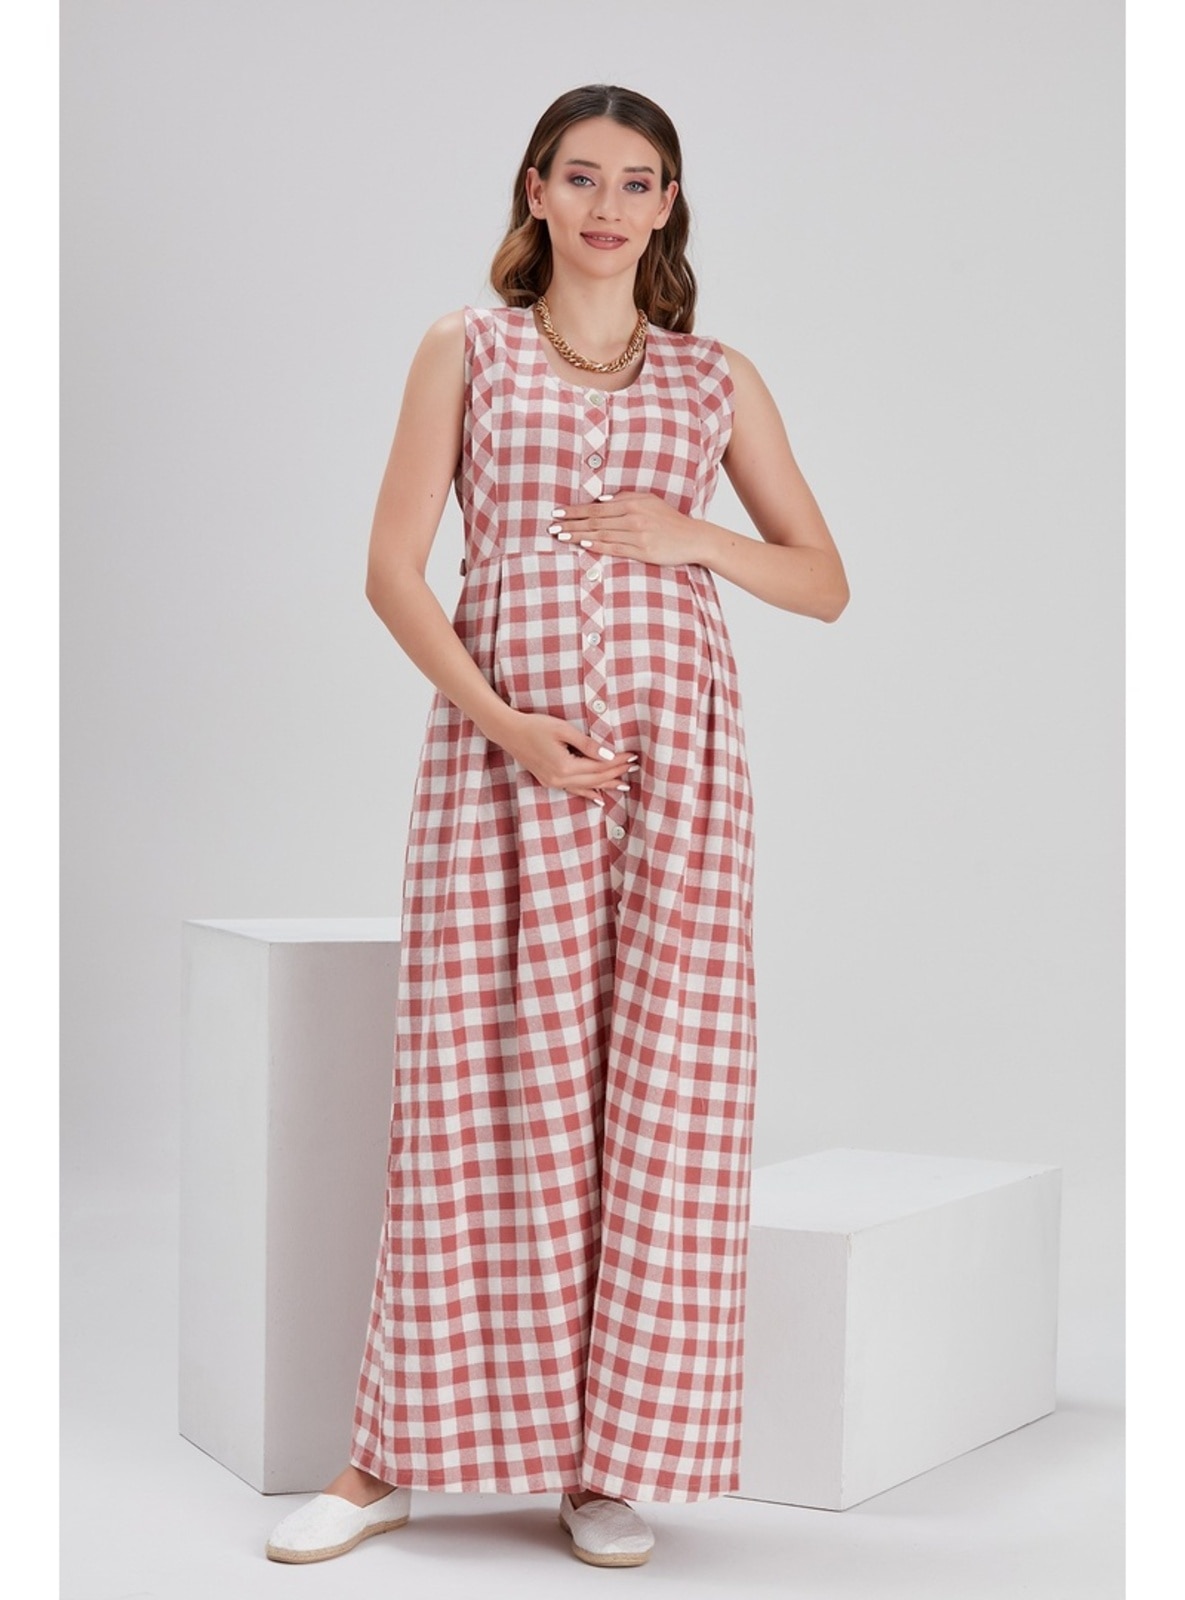 Ecru - Maternity Dress